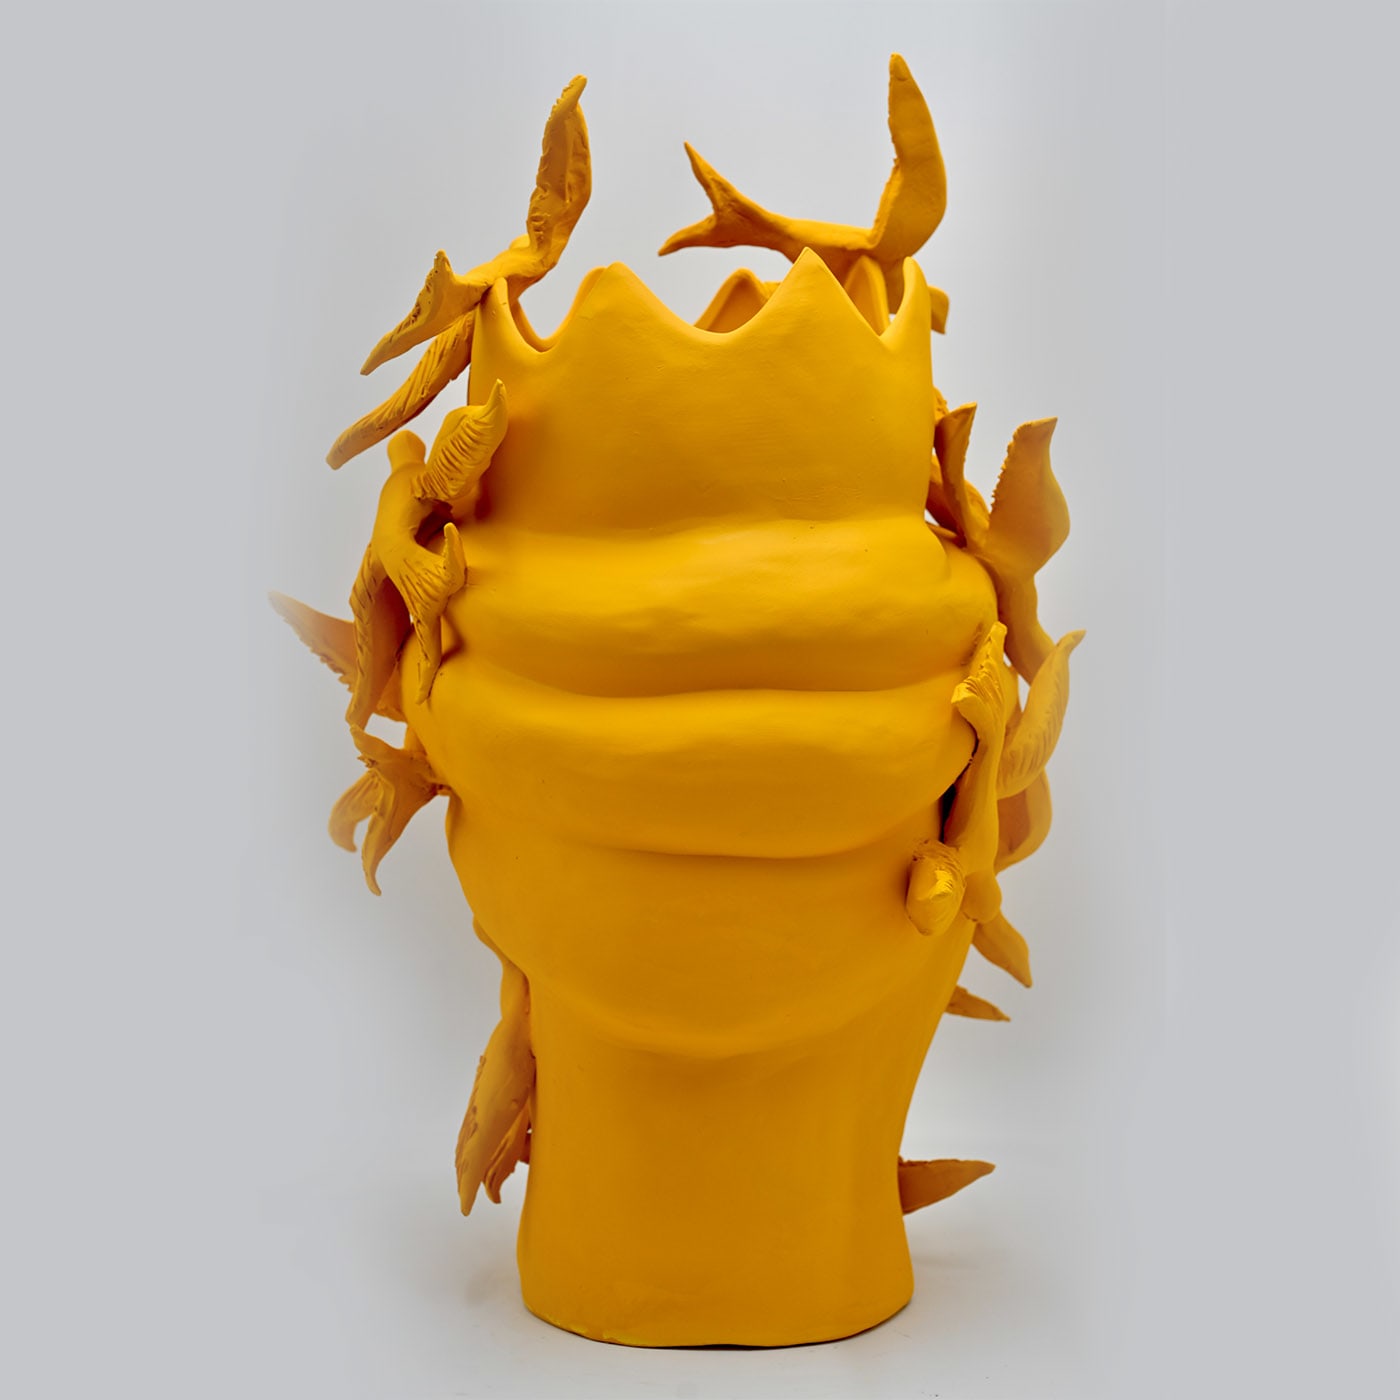 Moor's Head Orange Sculpture